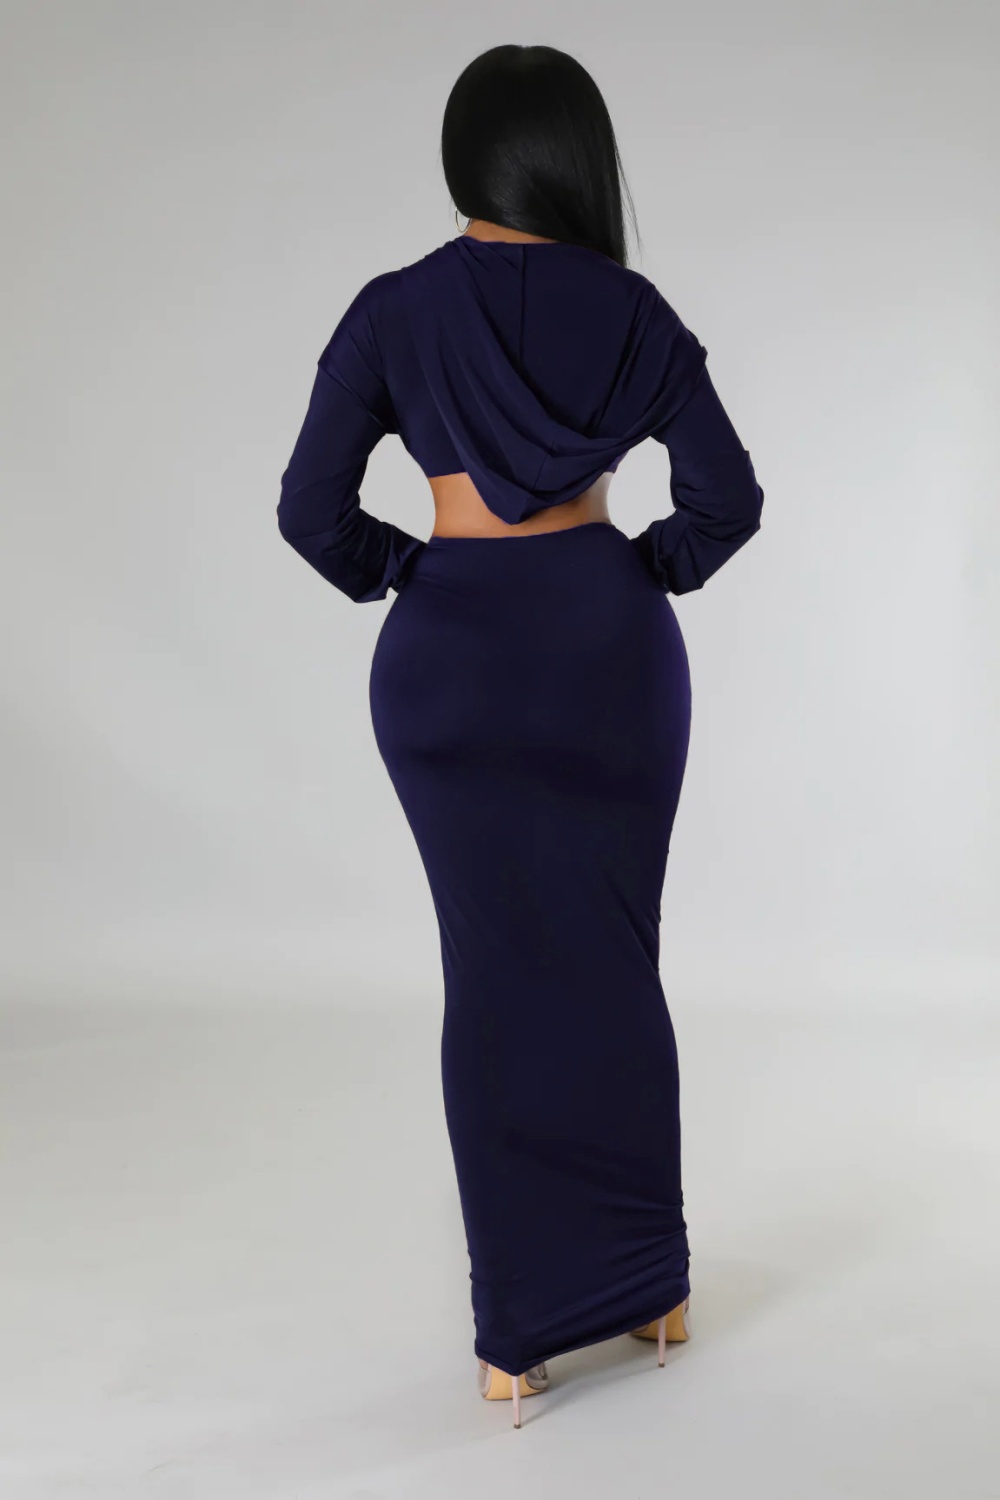 Hooded European style skirt high waist tops 2pcs set